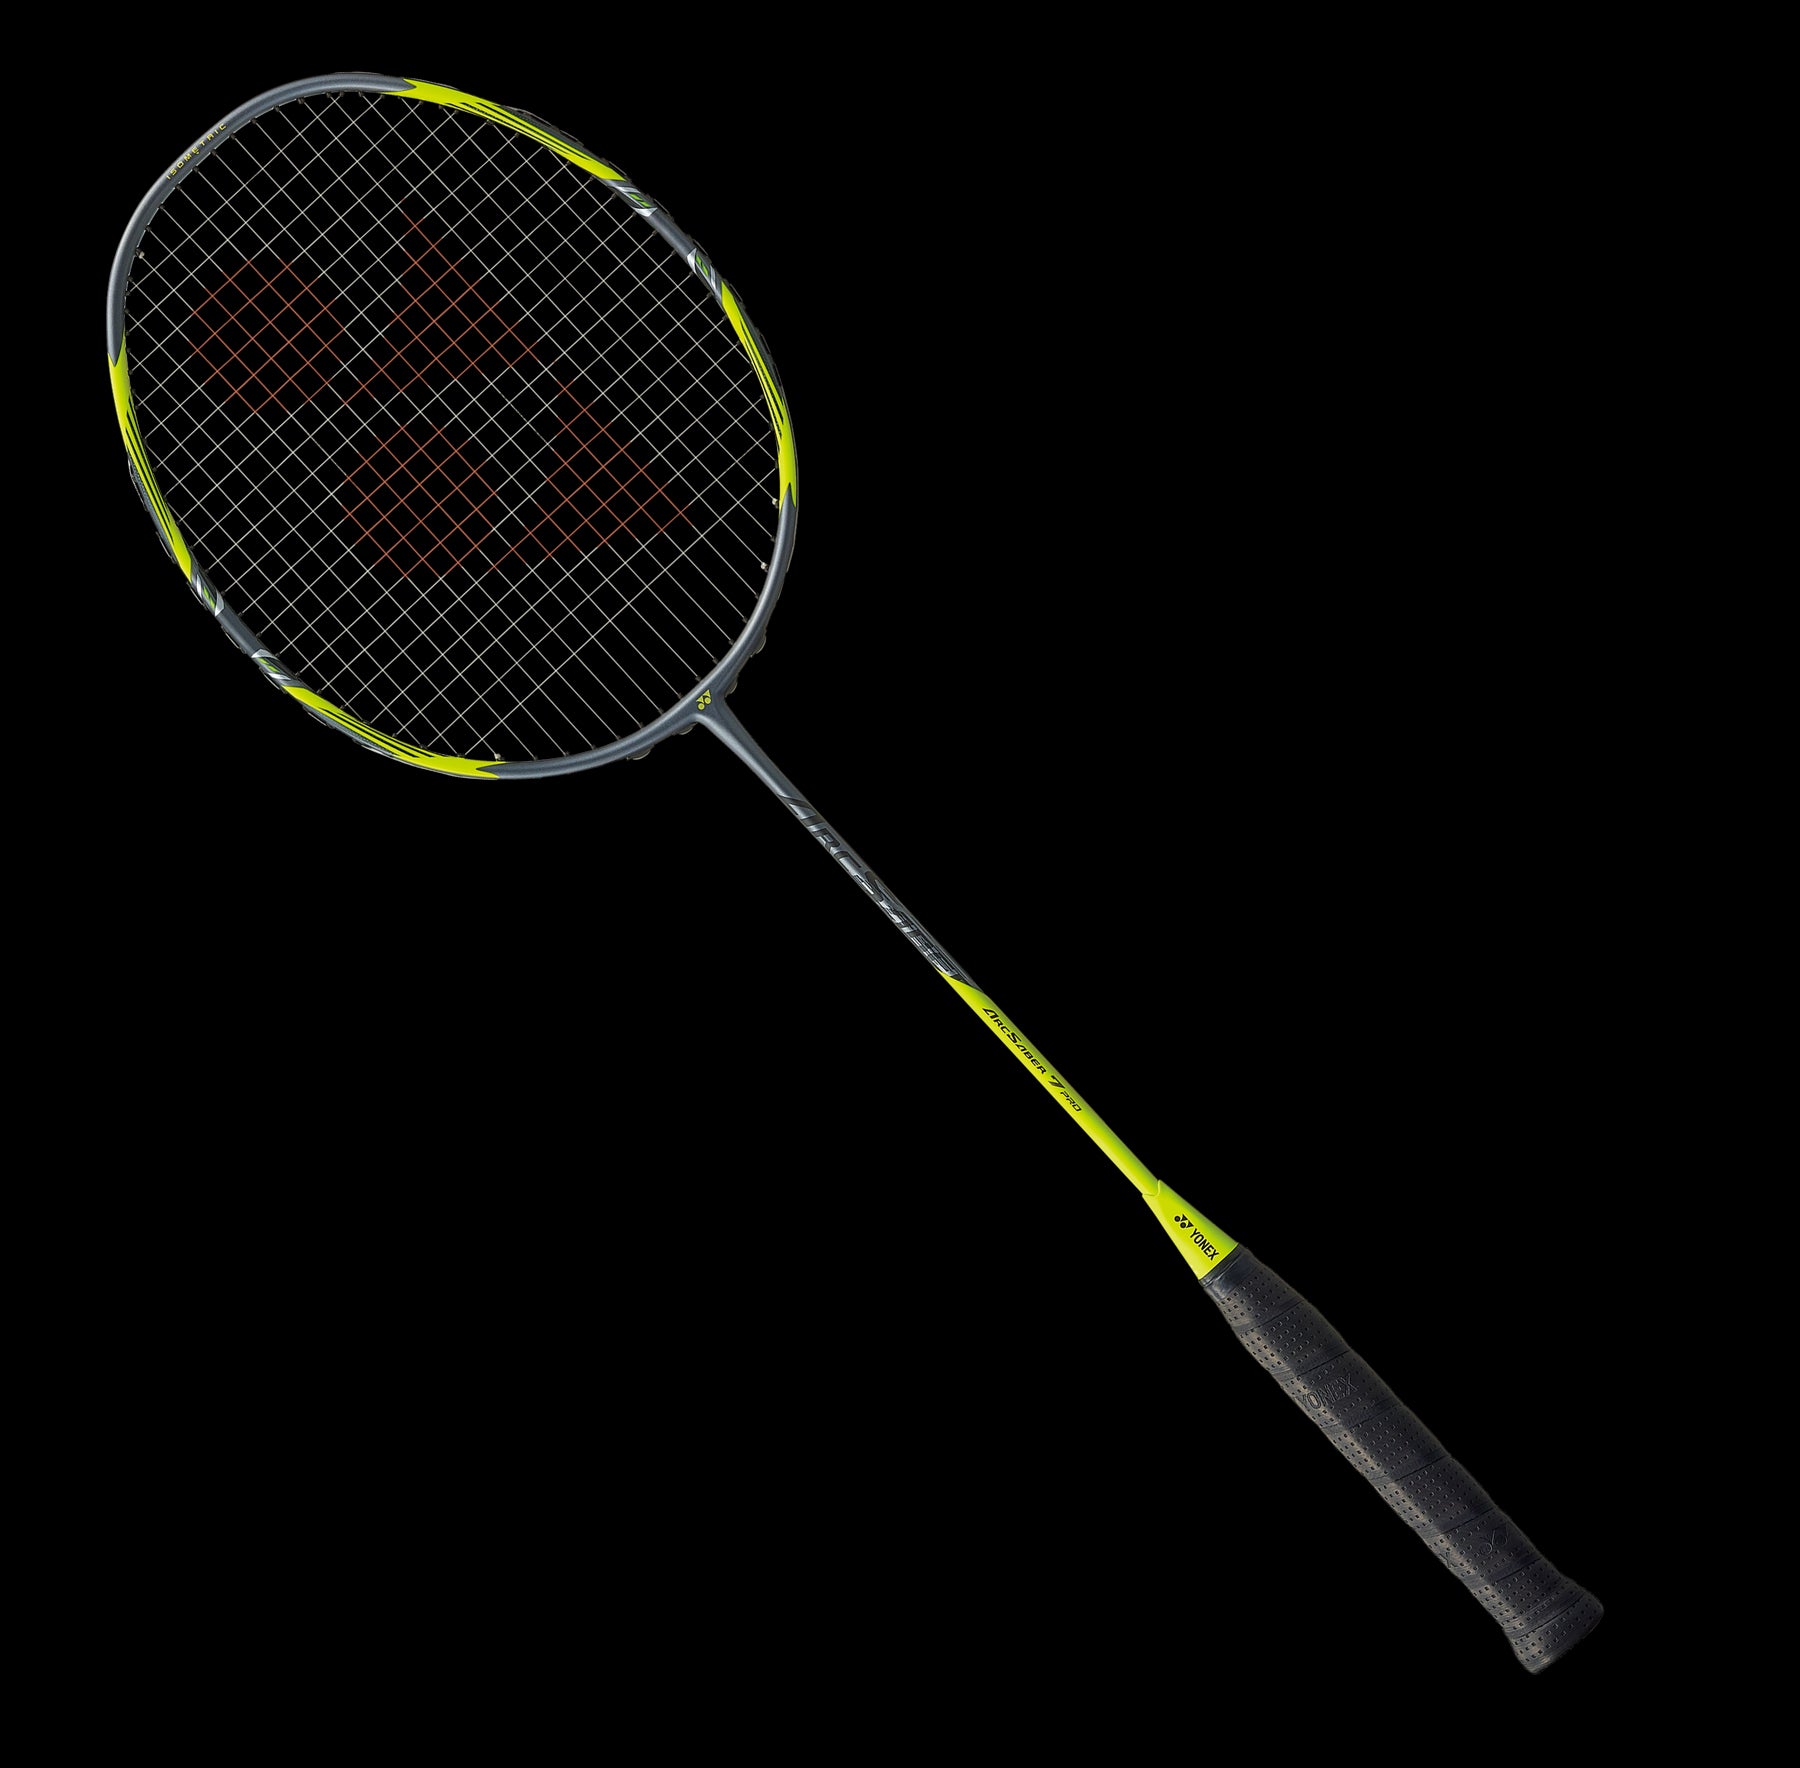 Yonex Arcsaber 7 Pro Badminton Racket - Grey Yellow - Front